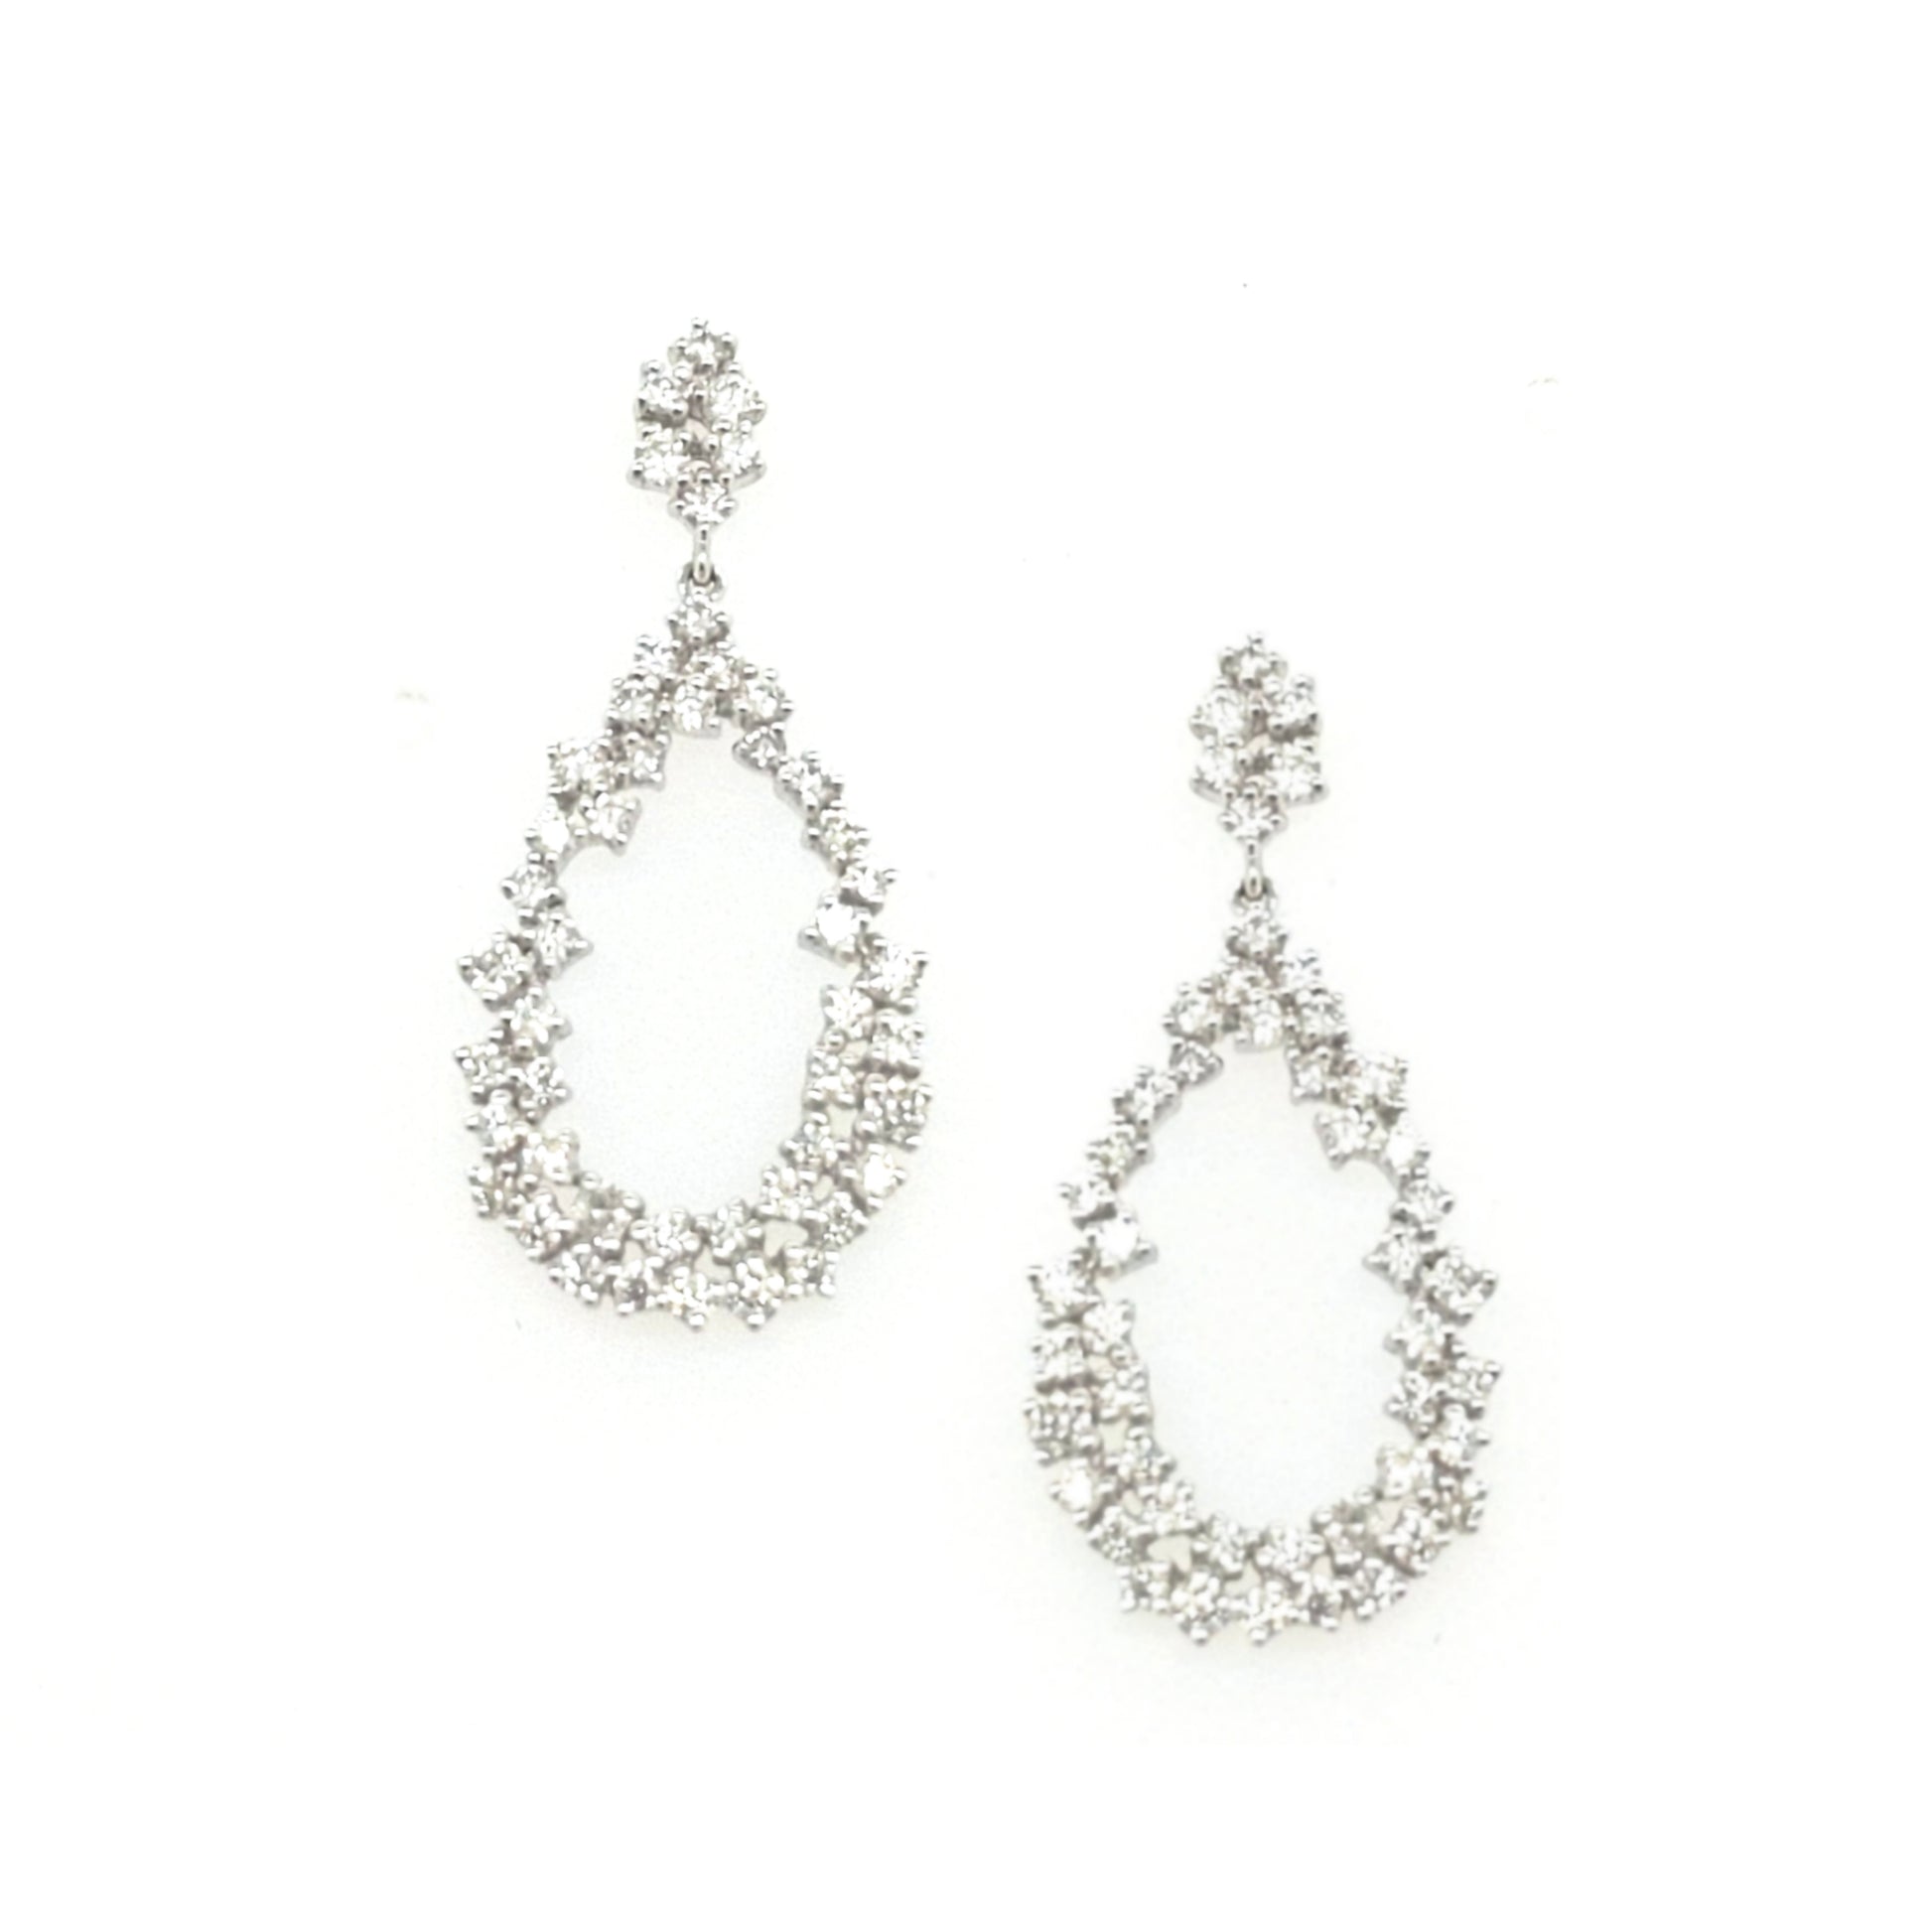 14K Gold And Diamond Teardrop Earrings - HK Jewels